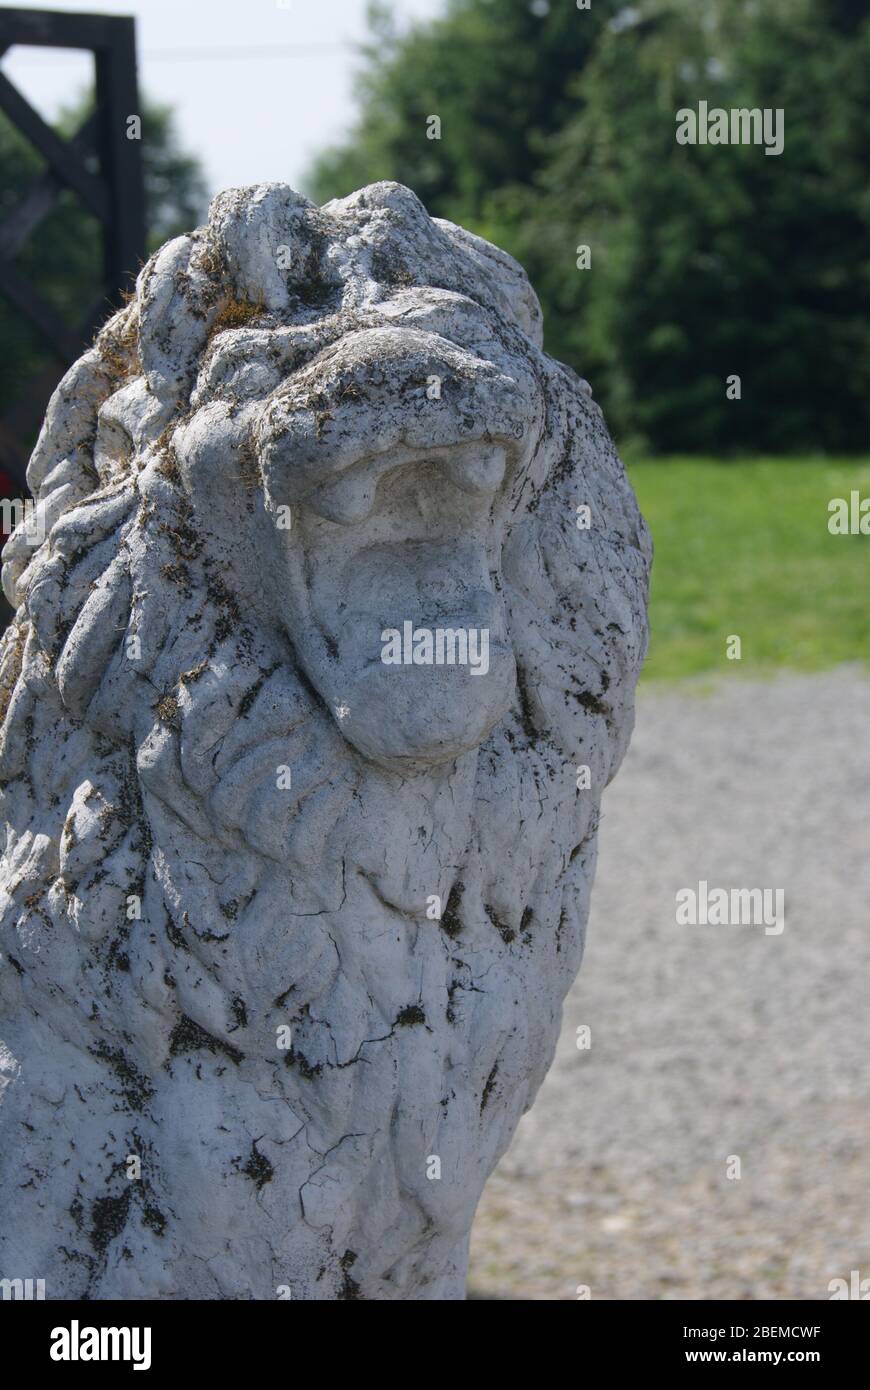 Petite statue d'un Lion avec une gueule ouverte, Pologne Foto Stock